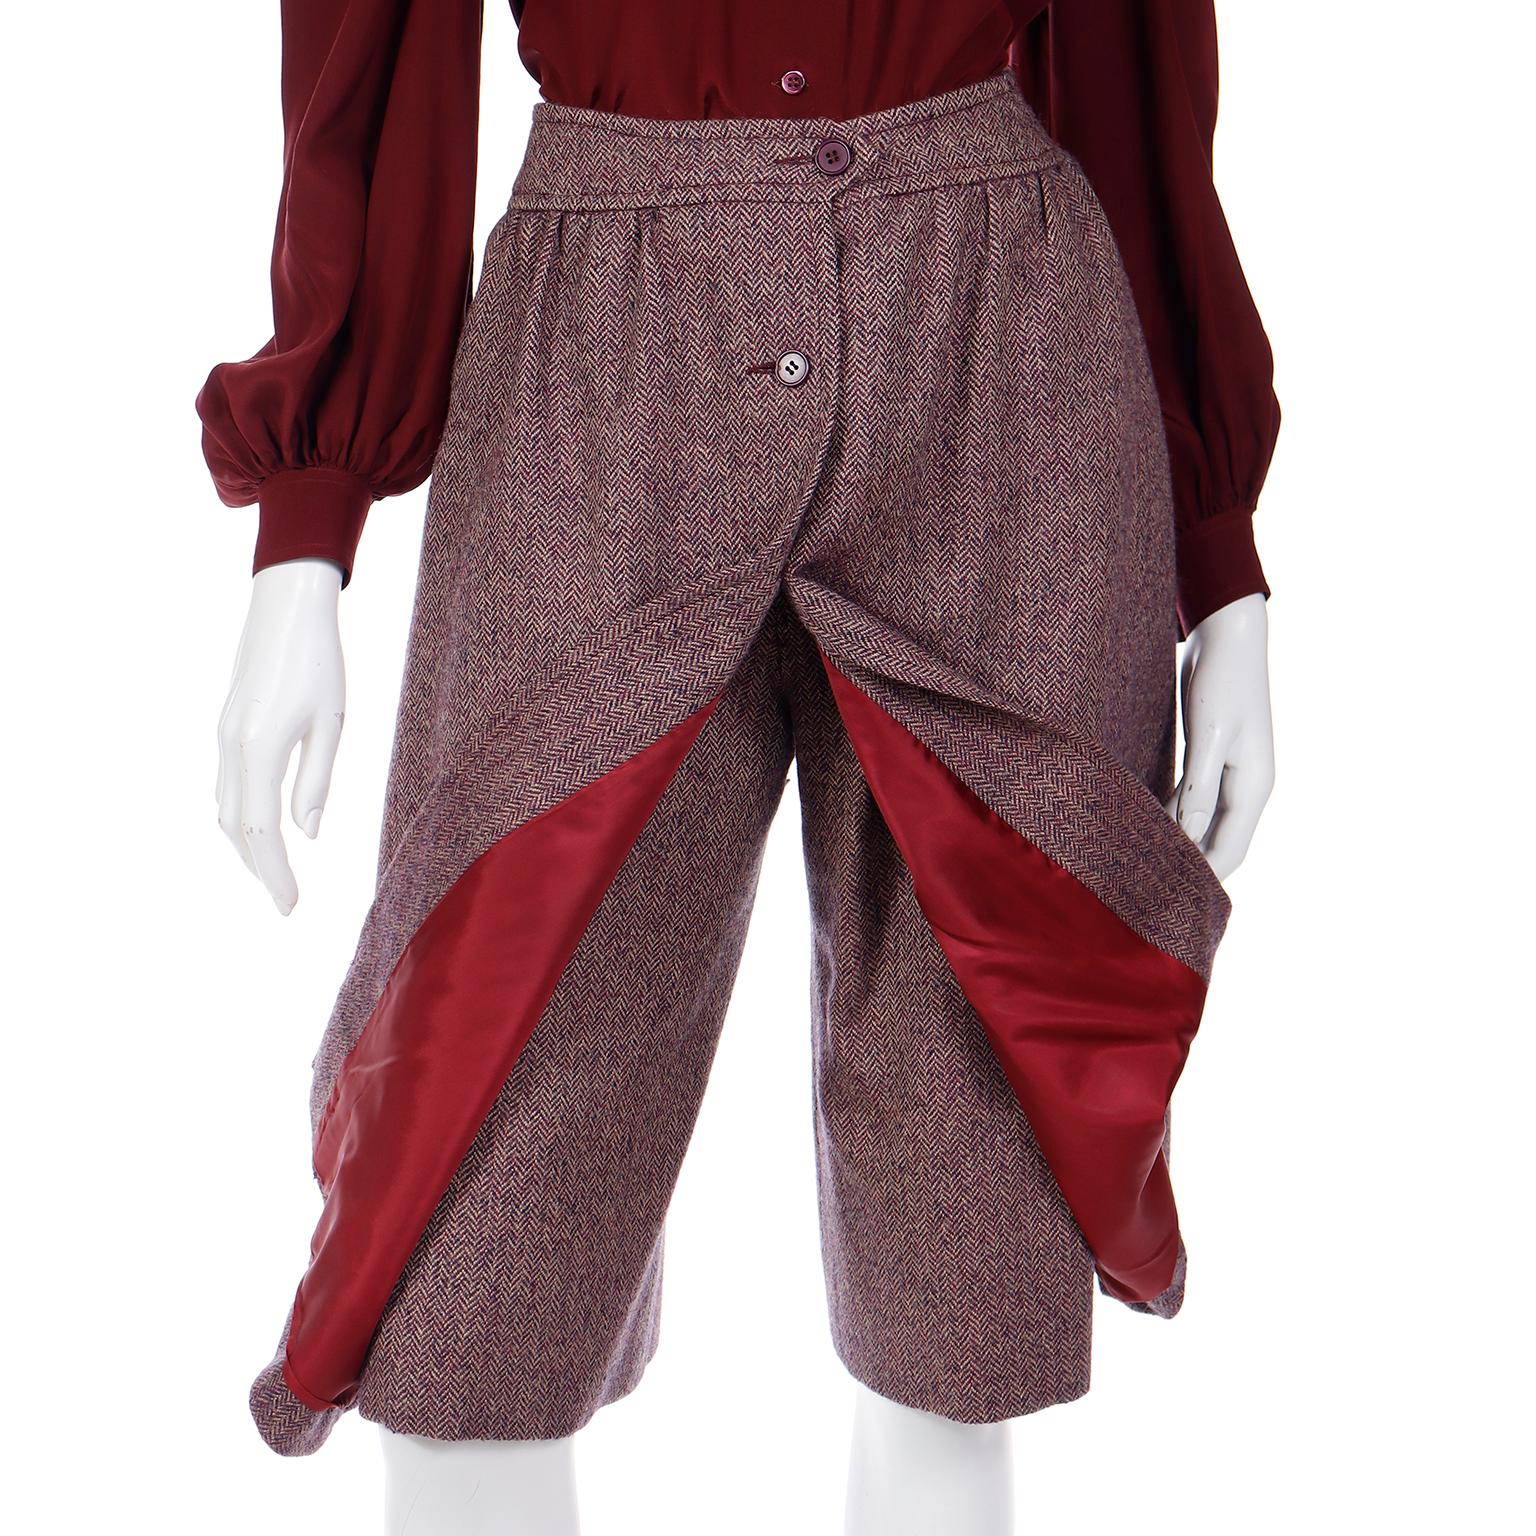 Jean Patou Vintage 3 Piece Burgundy Plaid Culotte Skirt Vest & Blouse Outfit For Sale 4